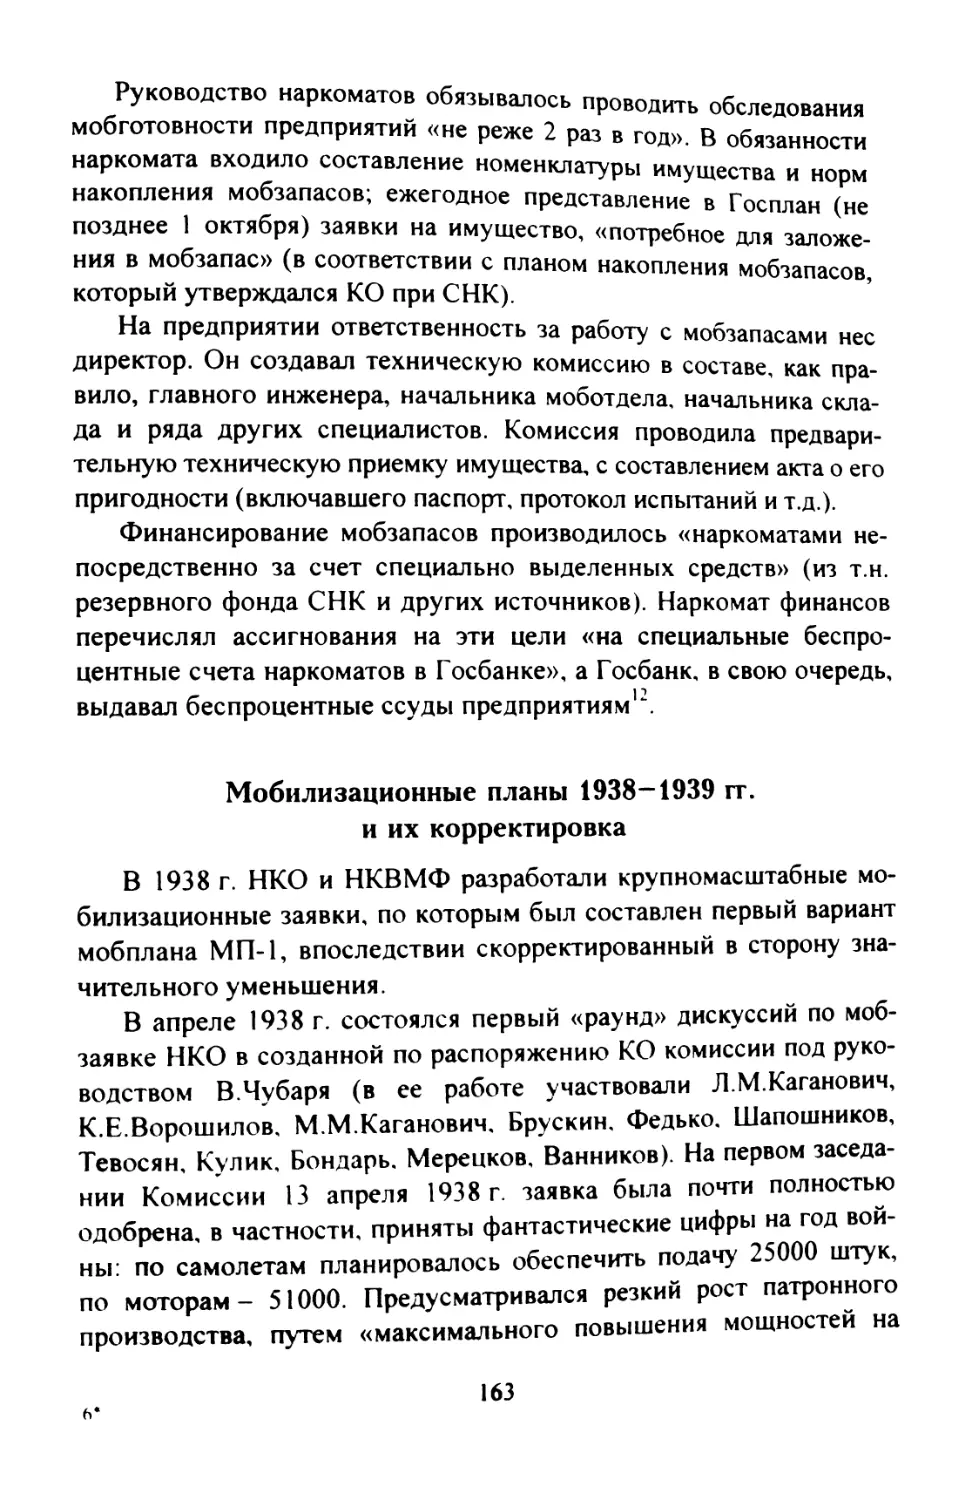 Мобилизационные планы 1938-1939 гг. и их корректировка